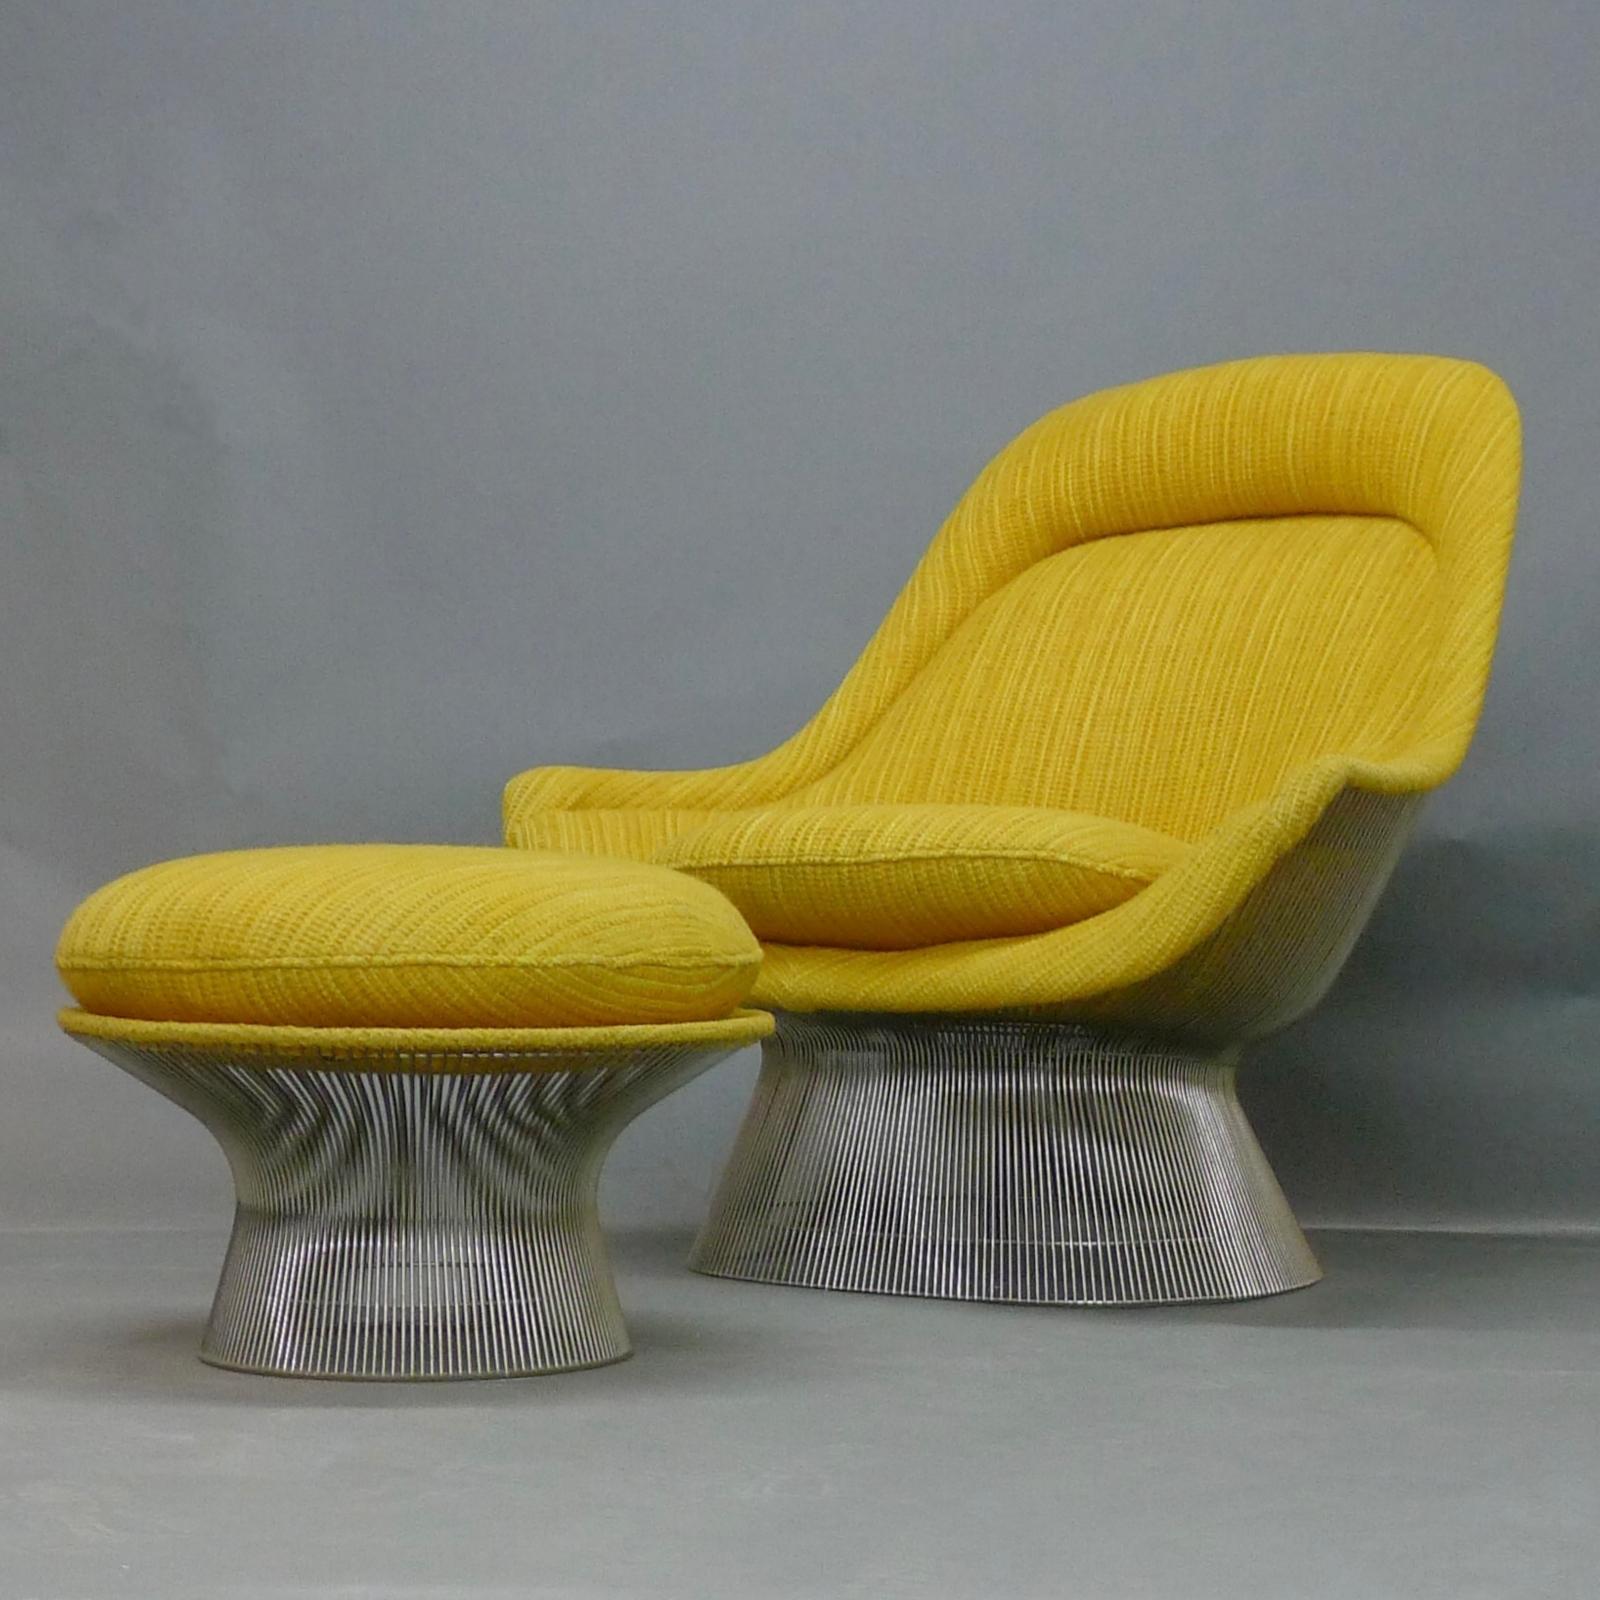 Warren Platner Easy Lounge Chair und passender Ottoman, entworfen 1966 und hergestellt von Knoll International, dieses Set datiert 1972.

Dieser ikonische Stuhl besteht aus geformtem Fiberglas, das mit dem originalen, leuchtend gelben Tweed-Stoff